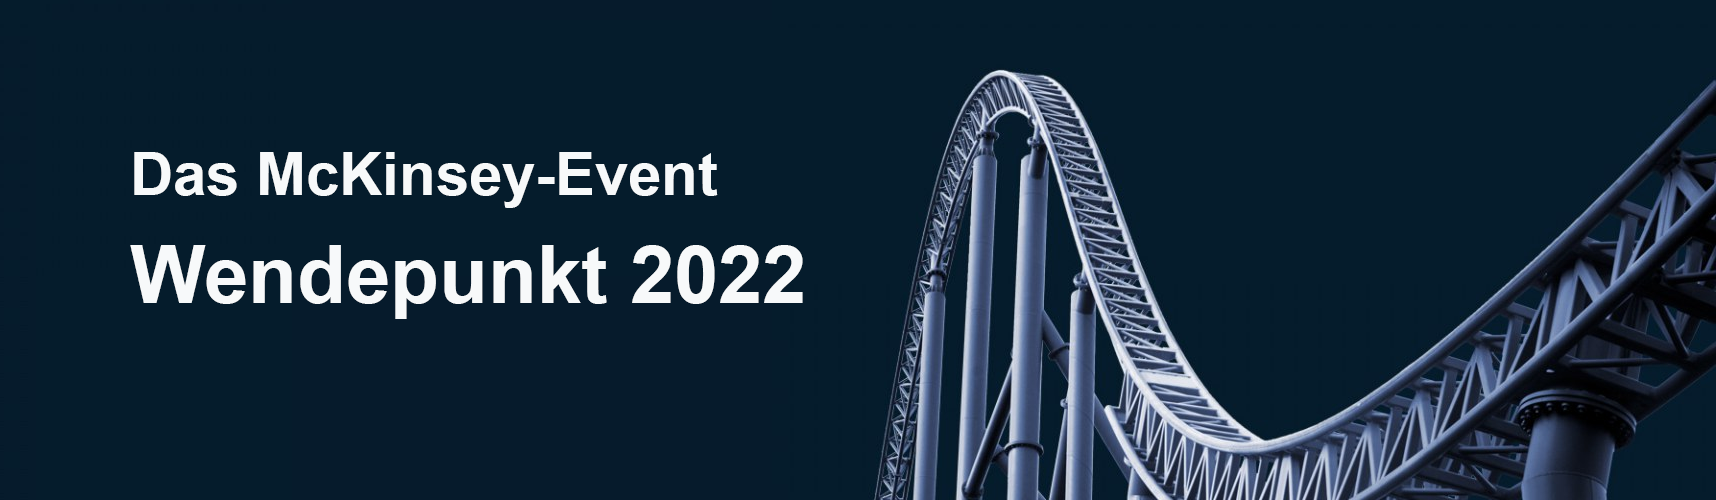 Das McKinsey-Event “Wendepunkt 2022”